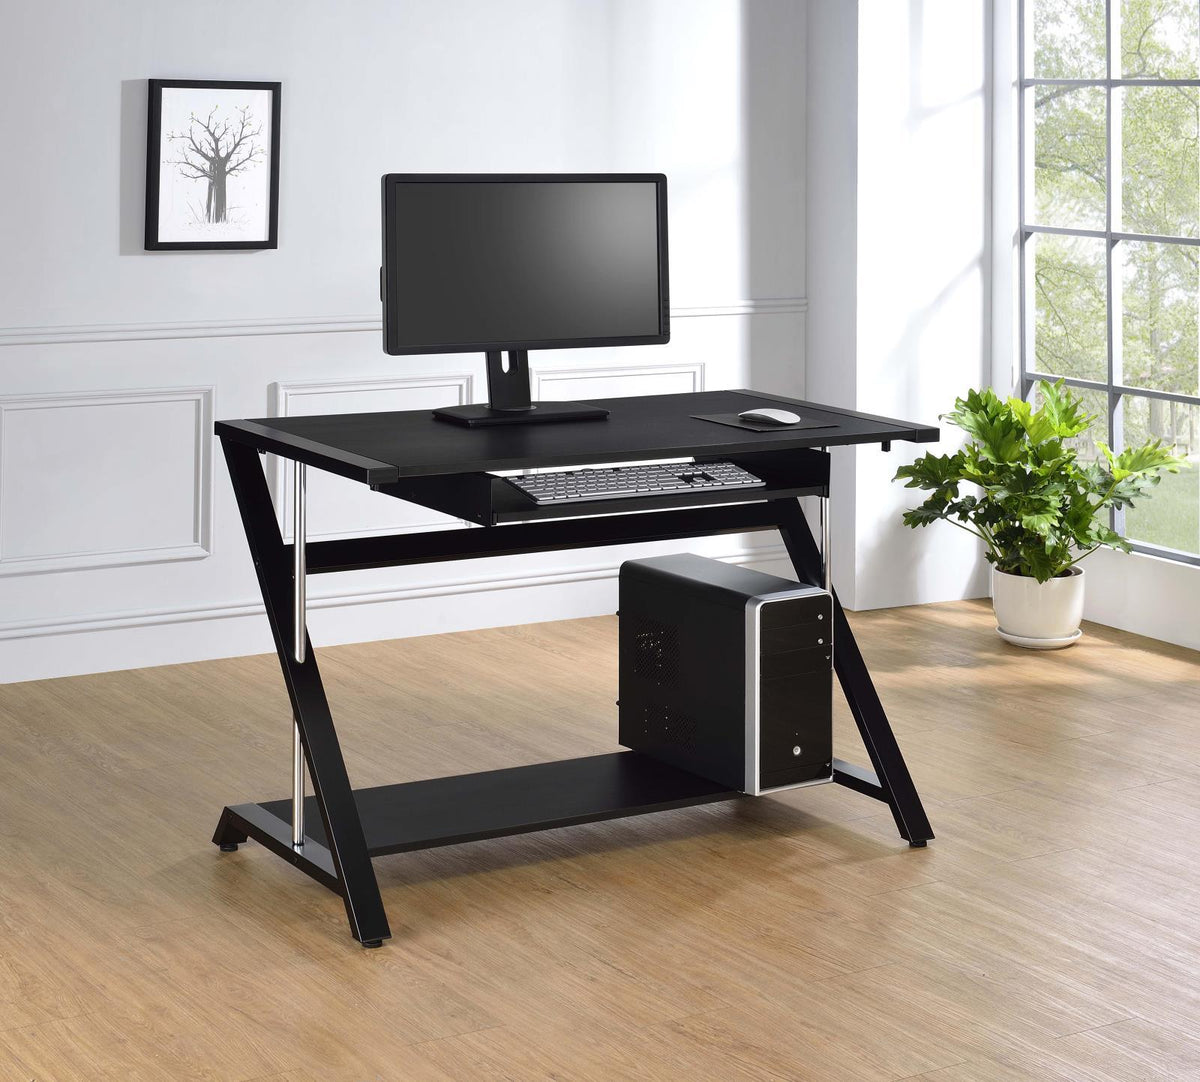 Mallet Computer Desk with Bottom Shelf Black Mallet Computer Desk with Bottom Shelf Black Half Price Furniture